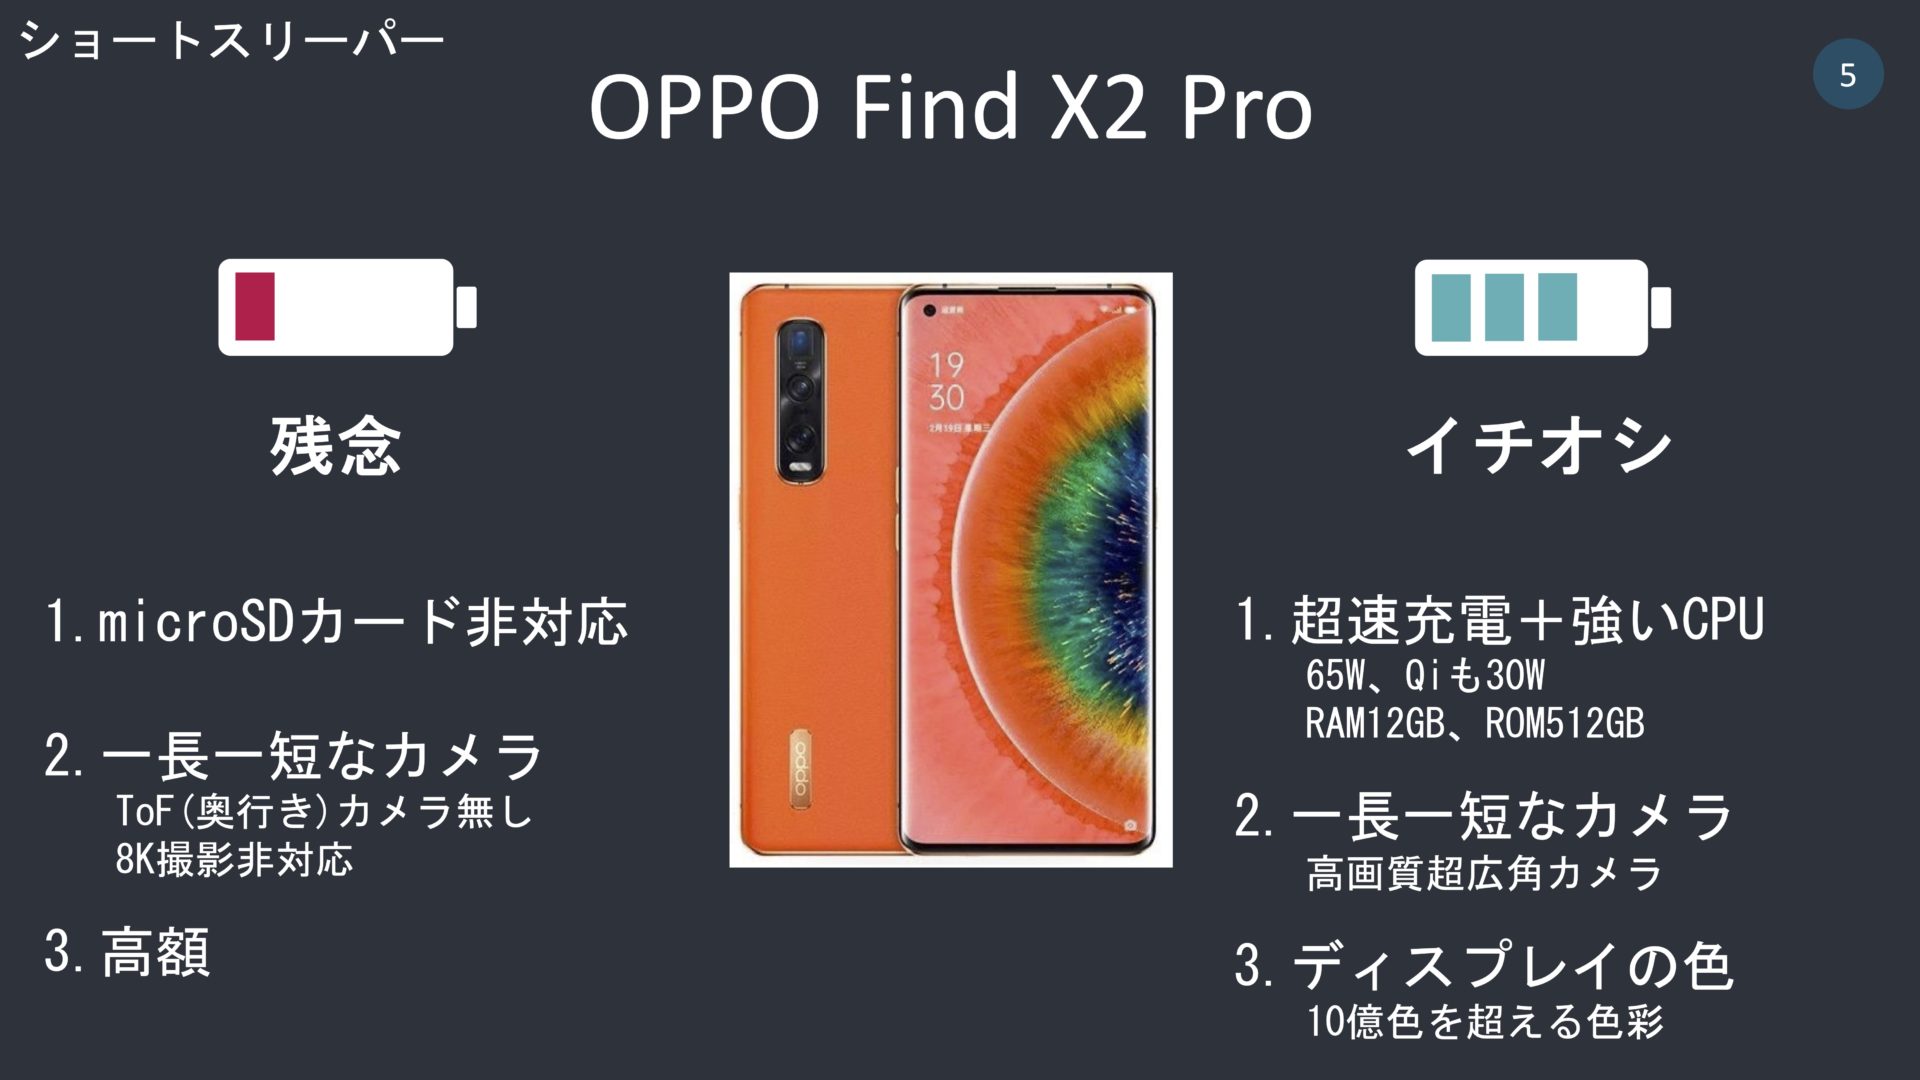 oppo_find_x2_pro